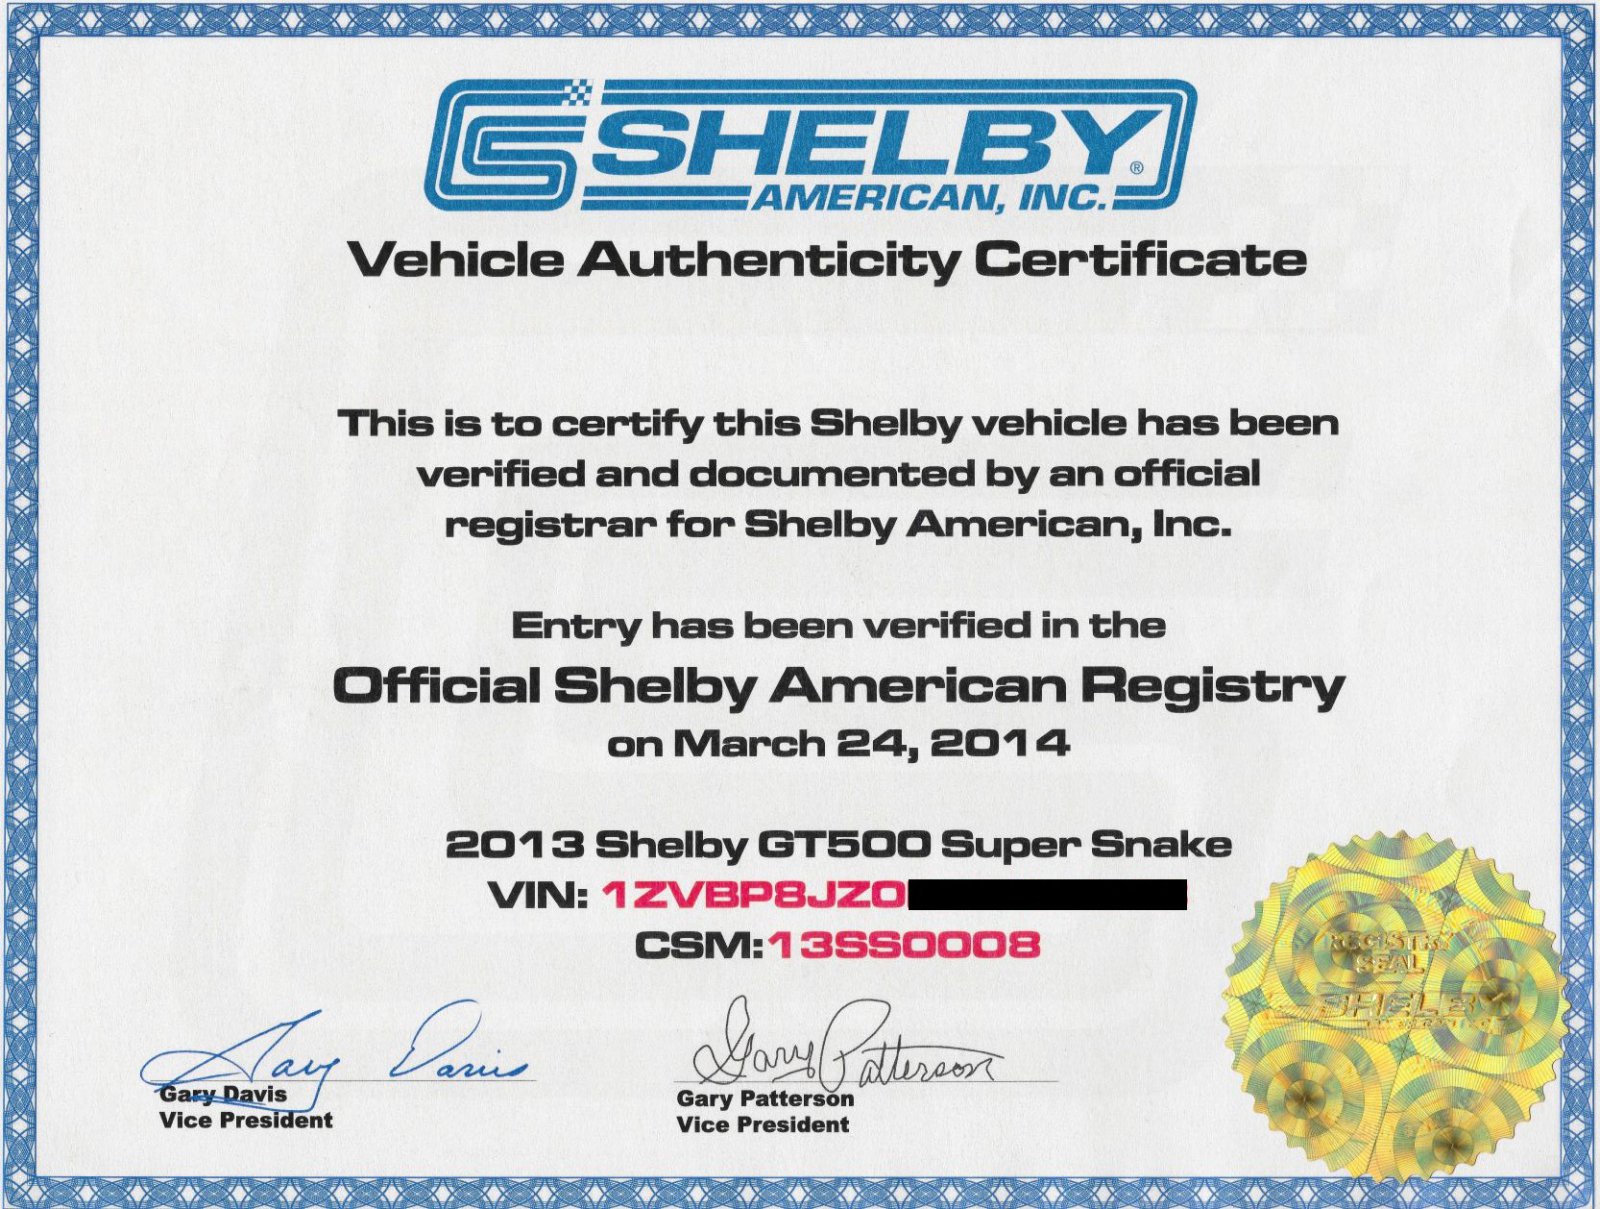 Shelby GT500 Super Snake Certificate.jpg